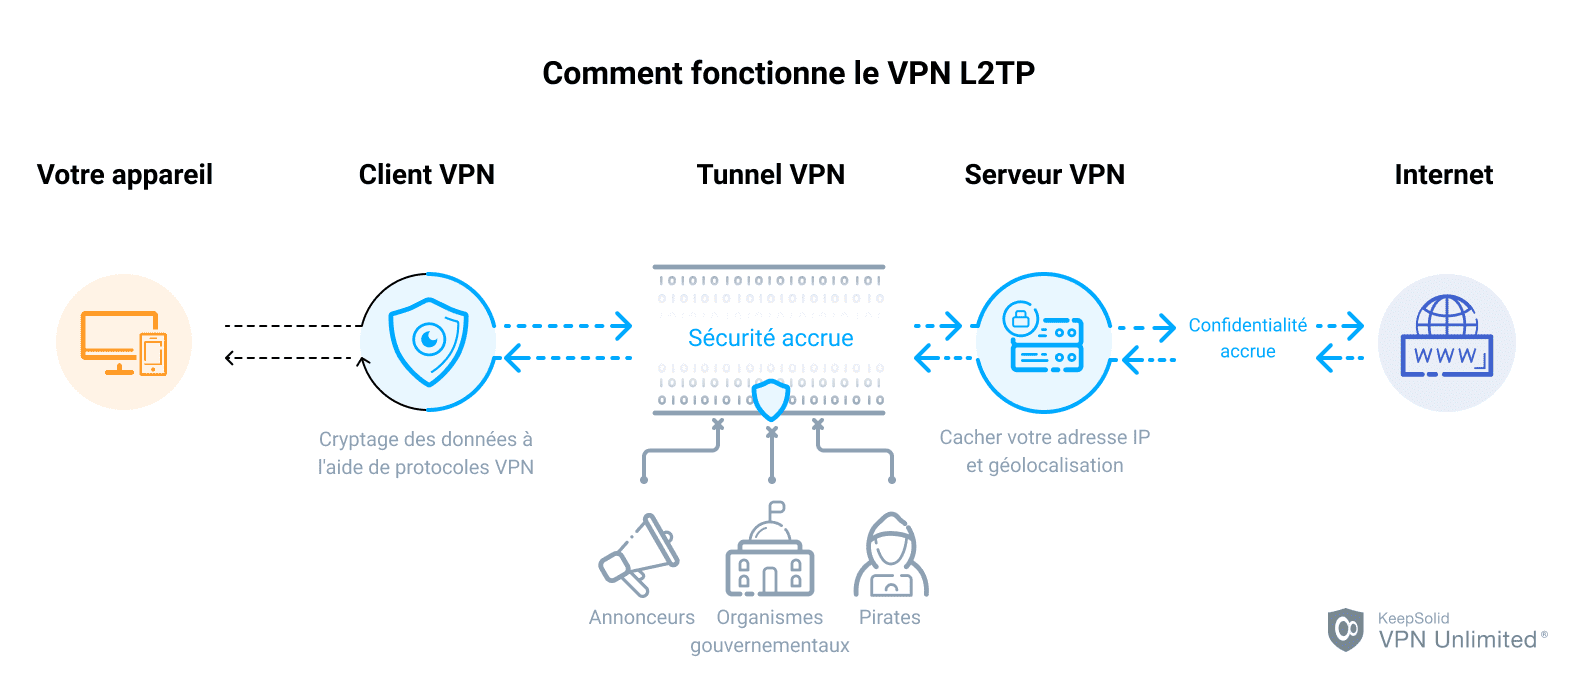 Comment fonctionne le VPN L2TP